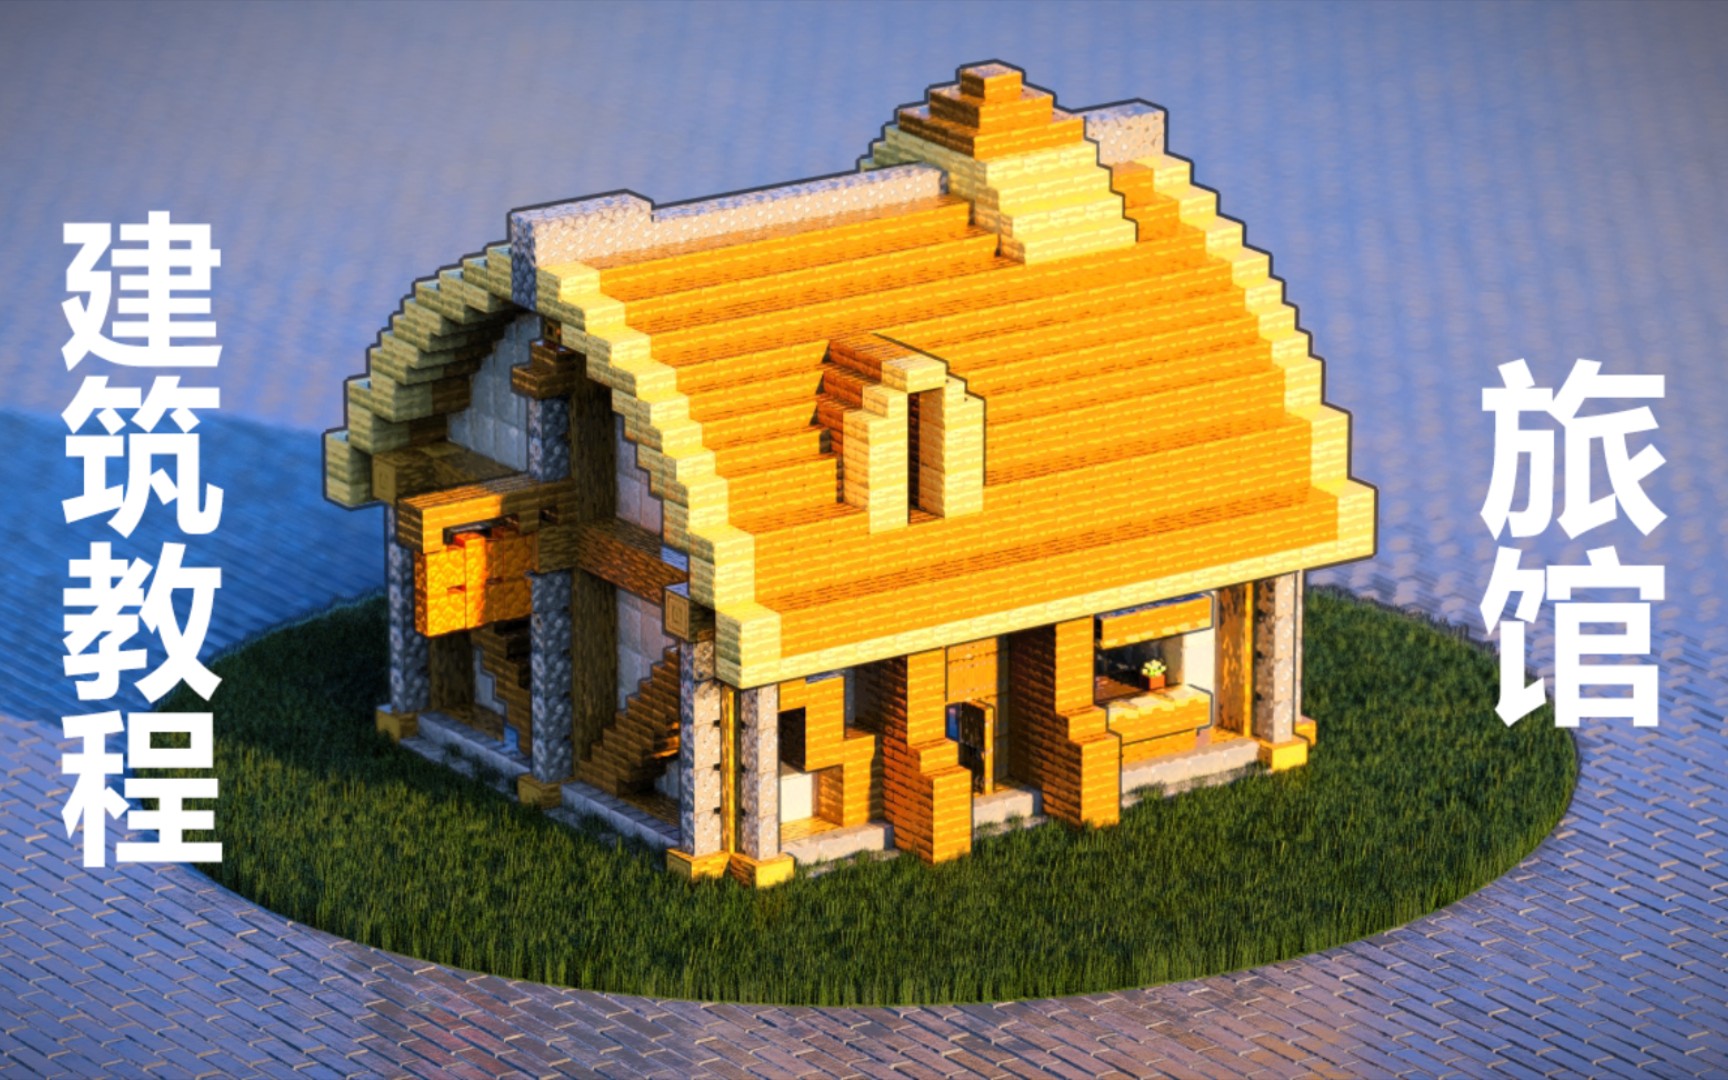 【我的世界】带你建造一个生存初期简易好看的木屋（MC建筑教程） - 哔哩哔哩